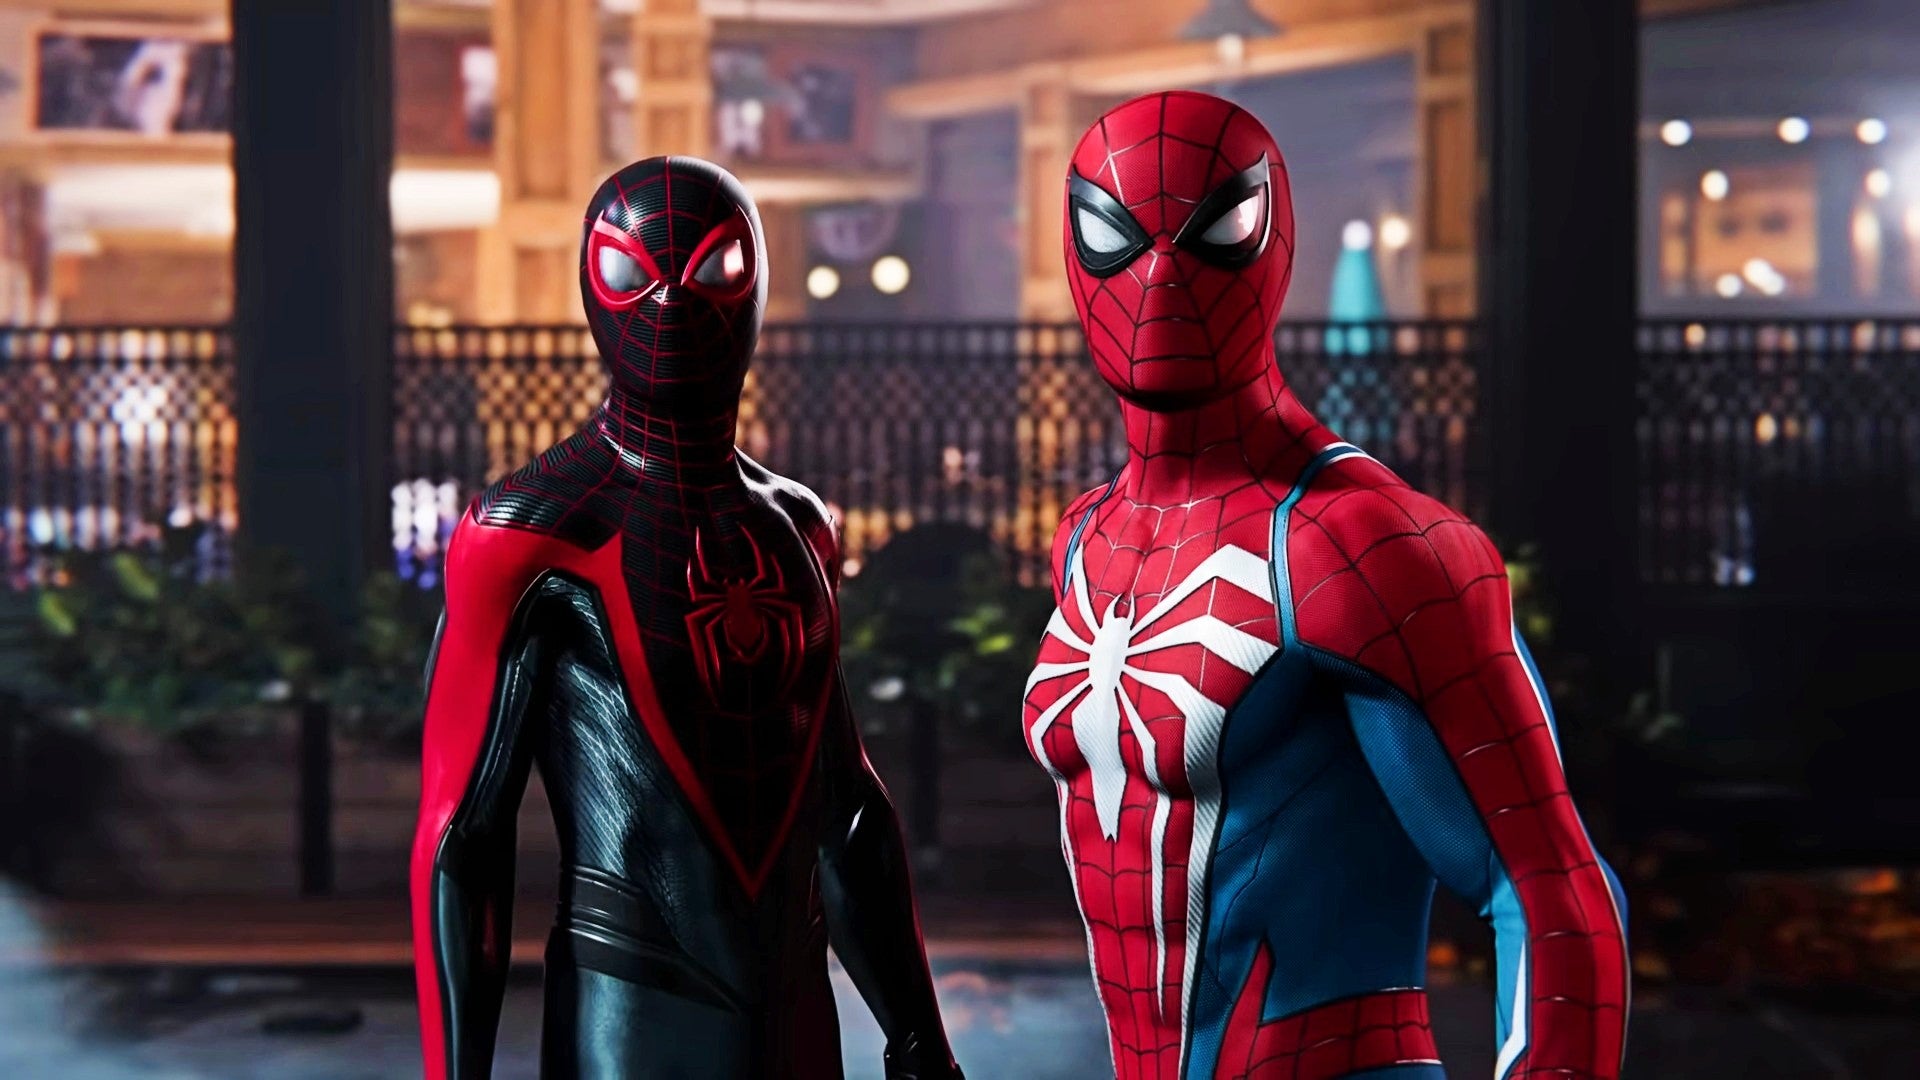 Bilder zu Spider-Man 2 könnte schon im September erscheinen, sagt Venom-Darsteller Tony Todd